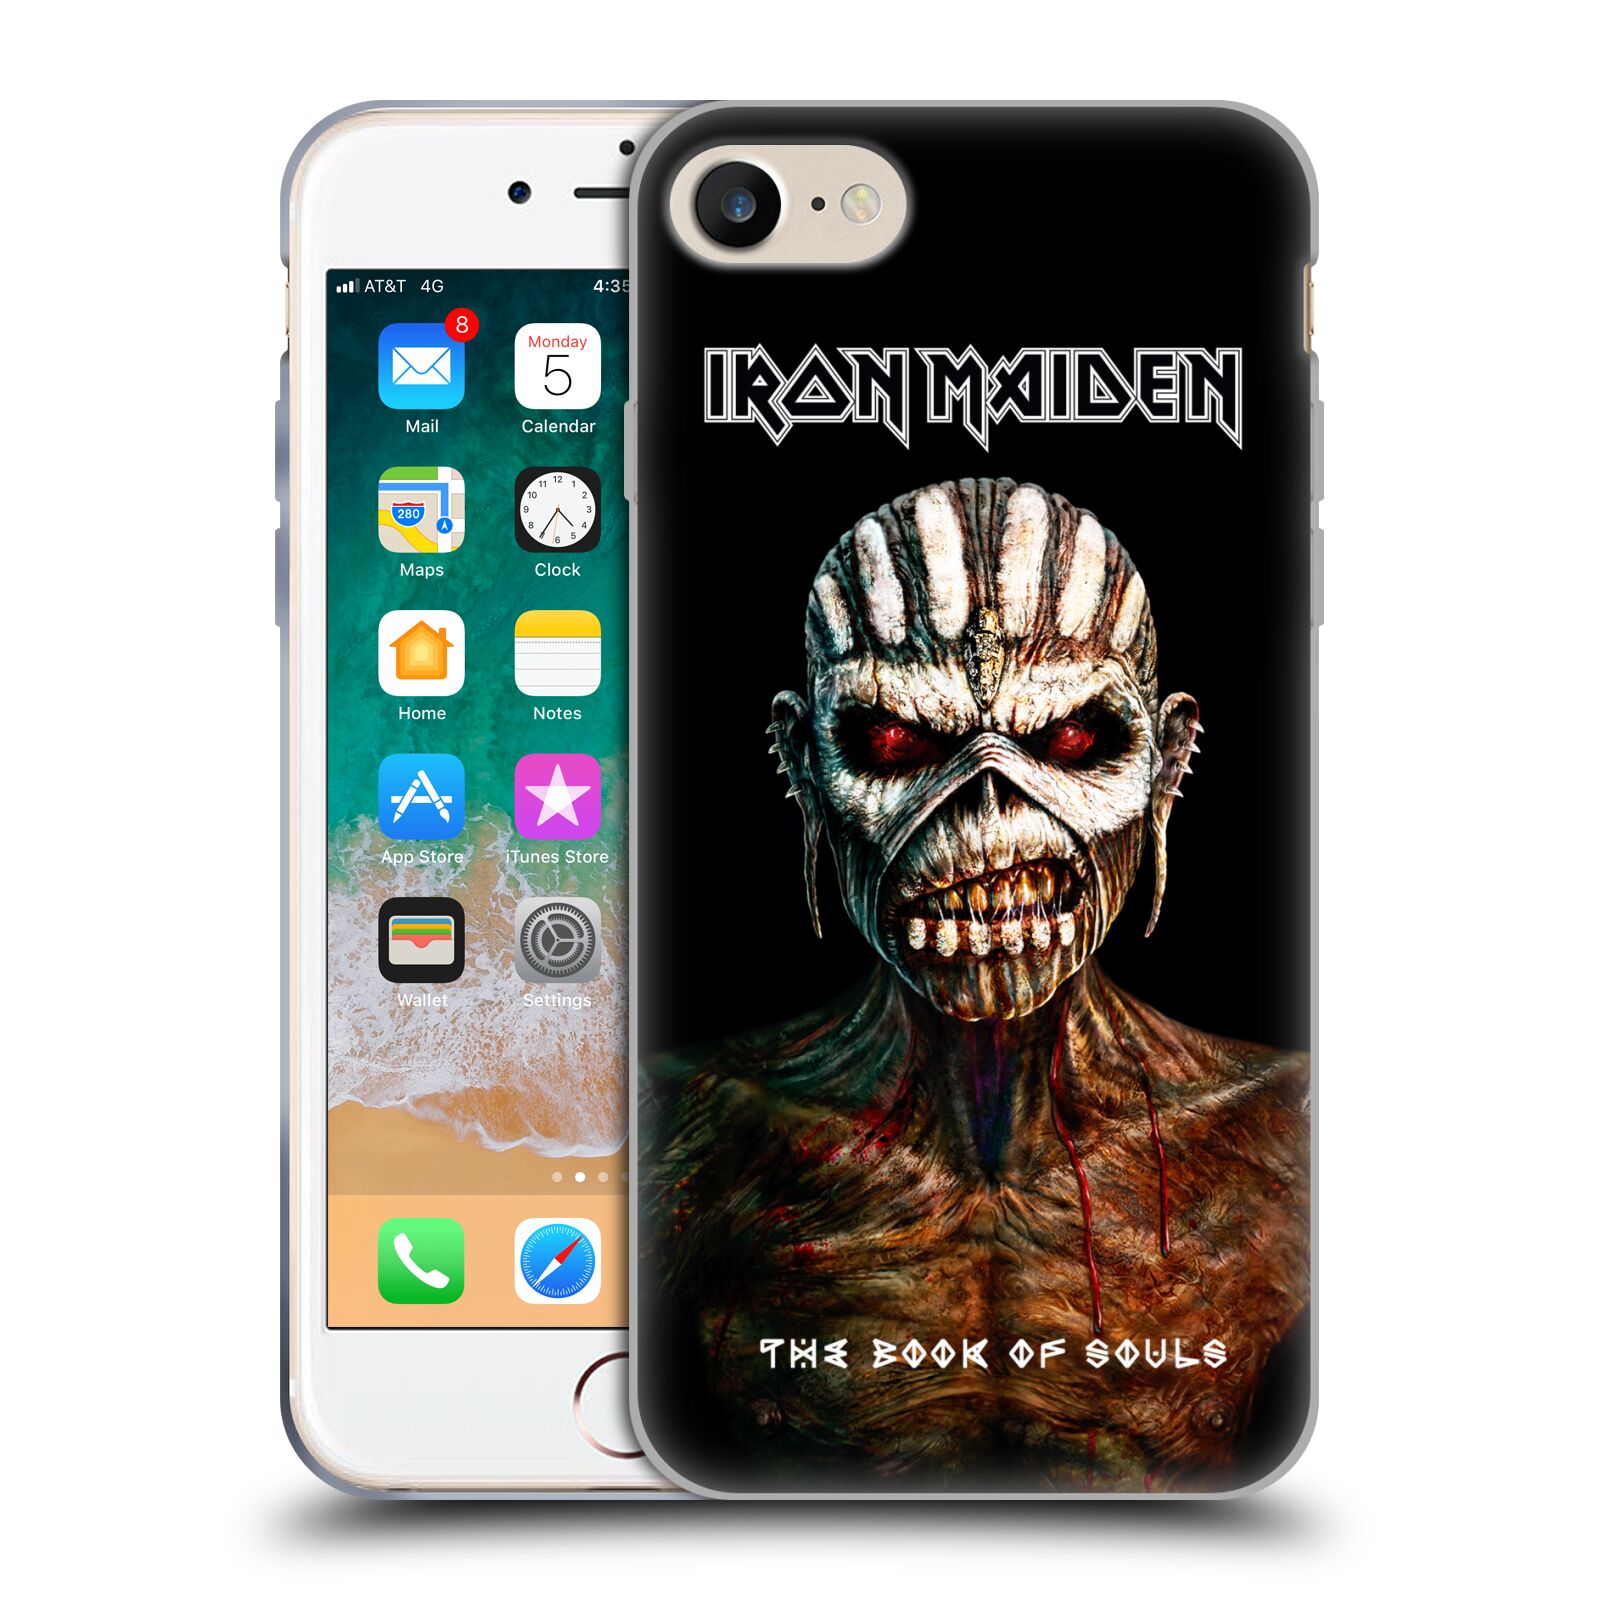 Silikonové pouzdro na mobil Apple iPhone 7 HEAD CASE - Iron Maiden - The Book Of Souls (Silikonový kryt či obal na mobilní telefon s licencovaným motivem Iron Maiden Apple iPhone 7)